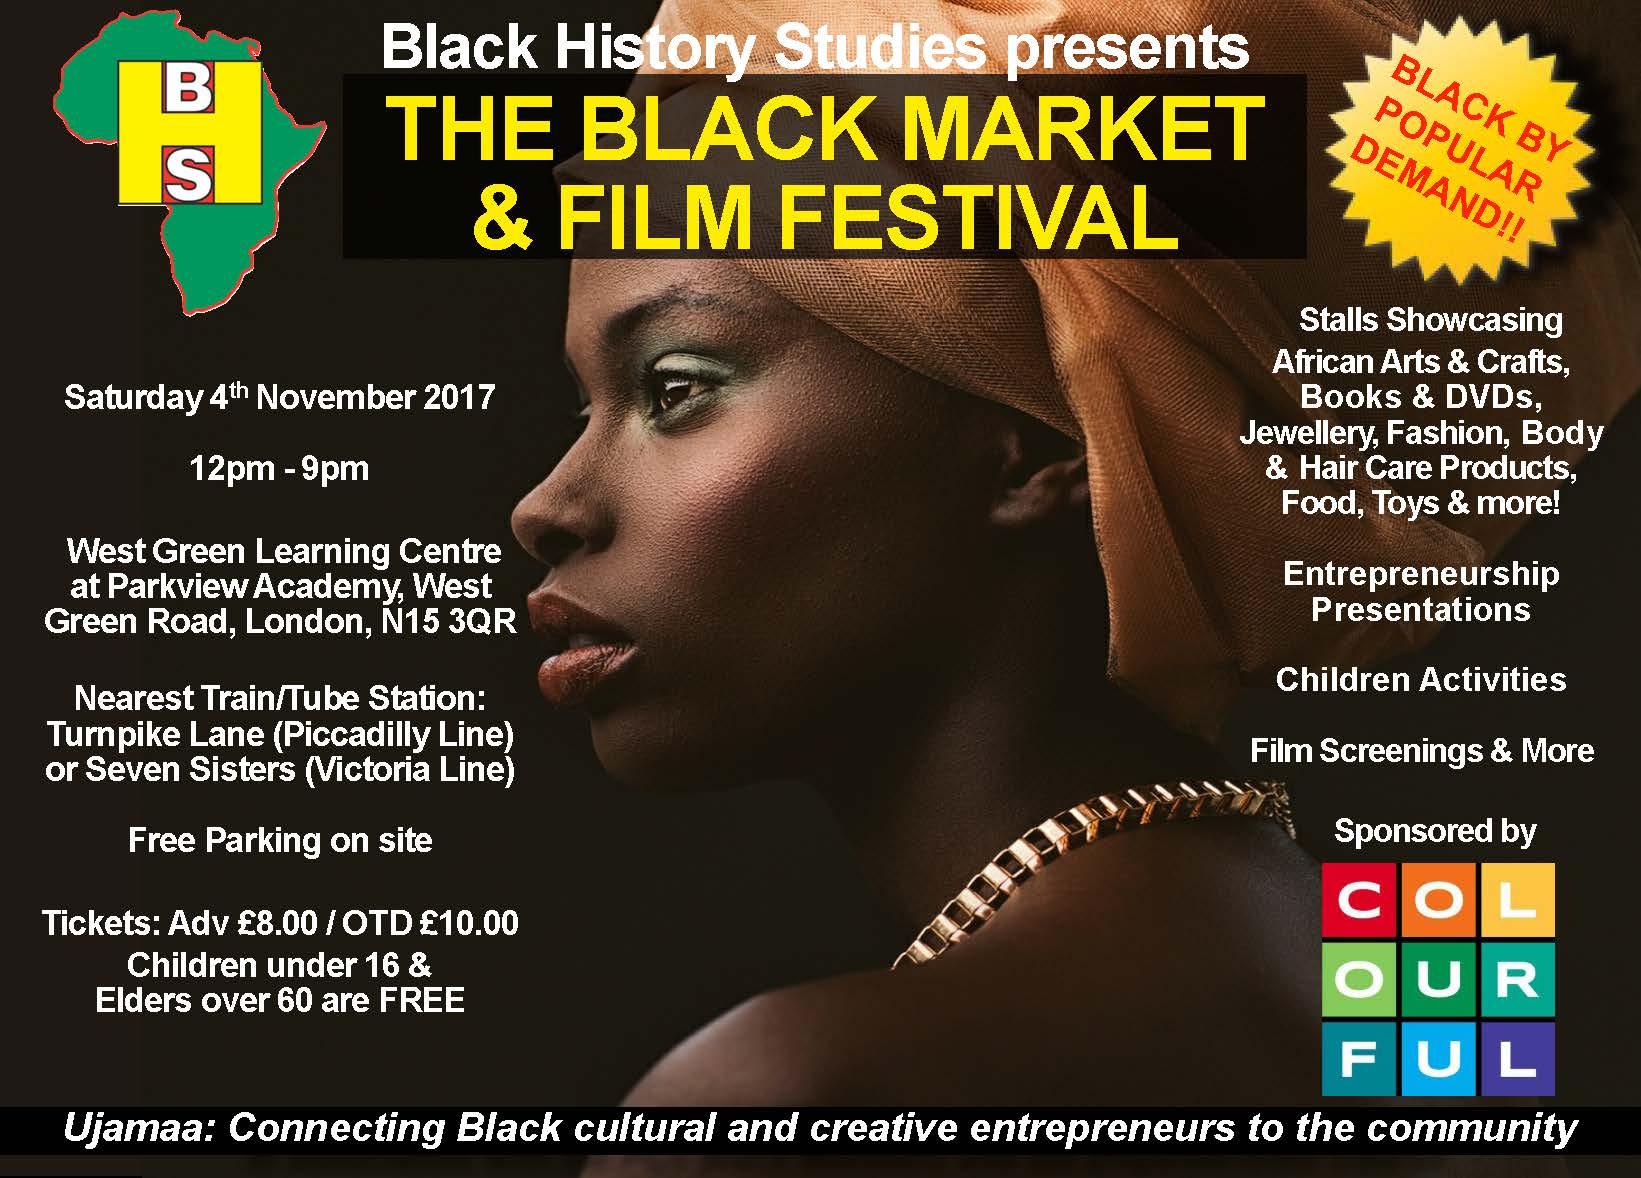 The Black Market & Film Festival - Saturday 4th November 2017 | Blacknet UK